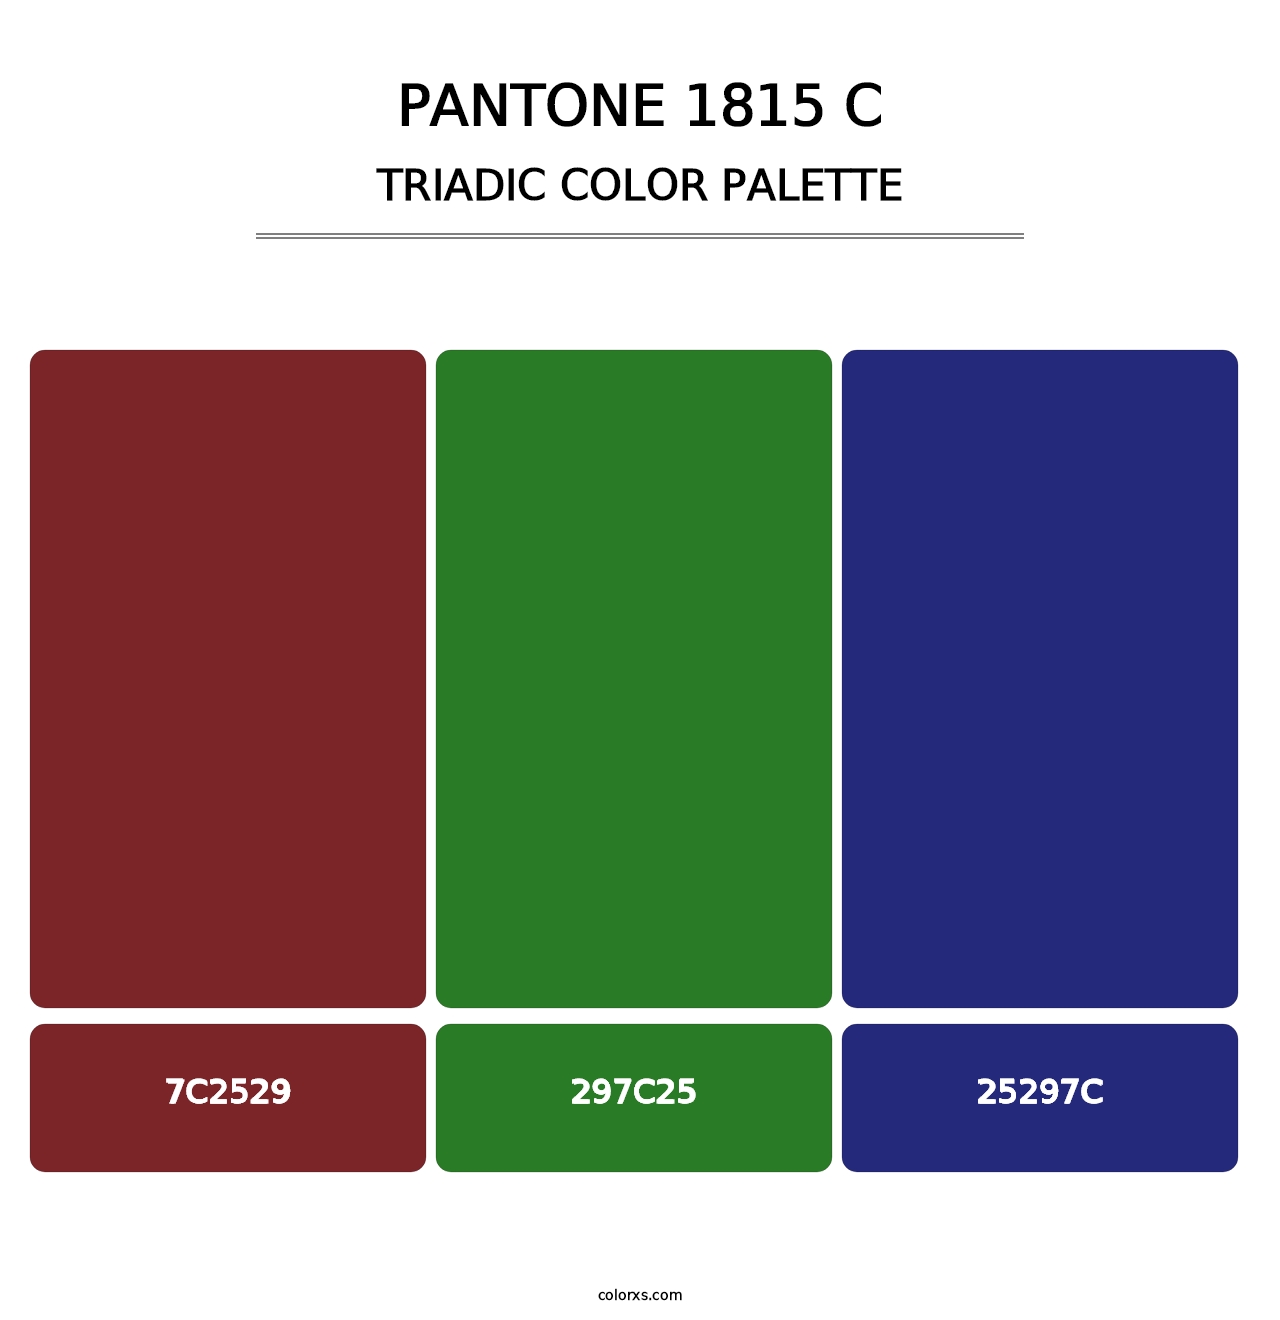 PANTONE 1815 C - Triadic Color Palette